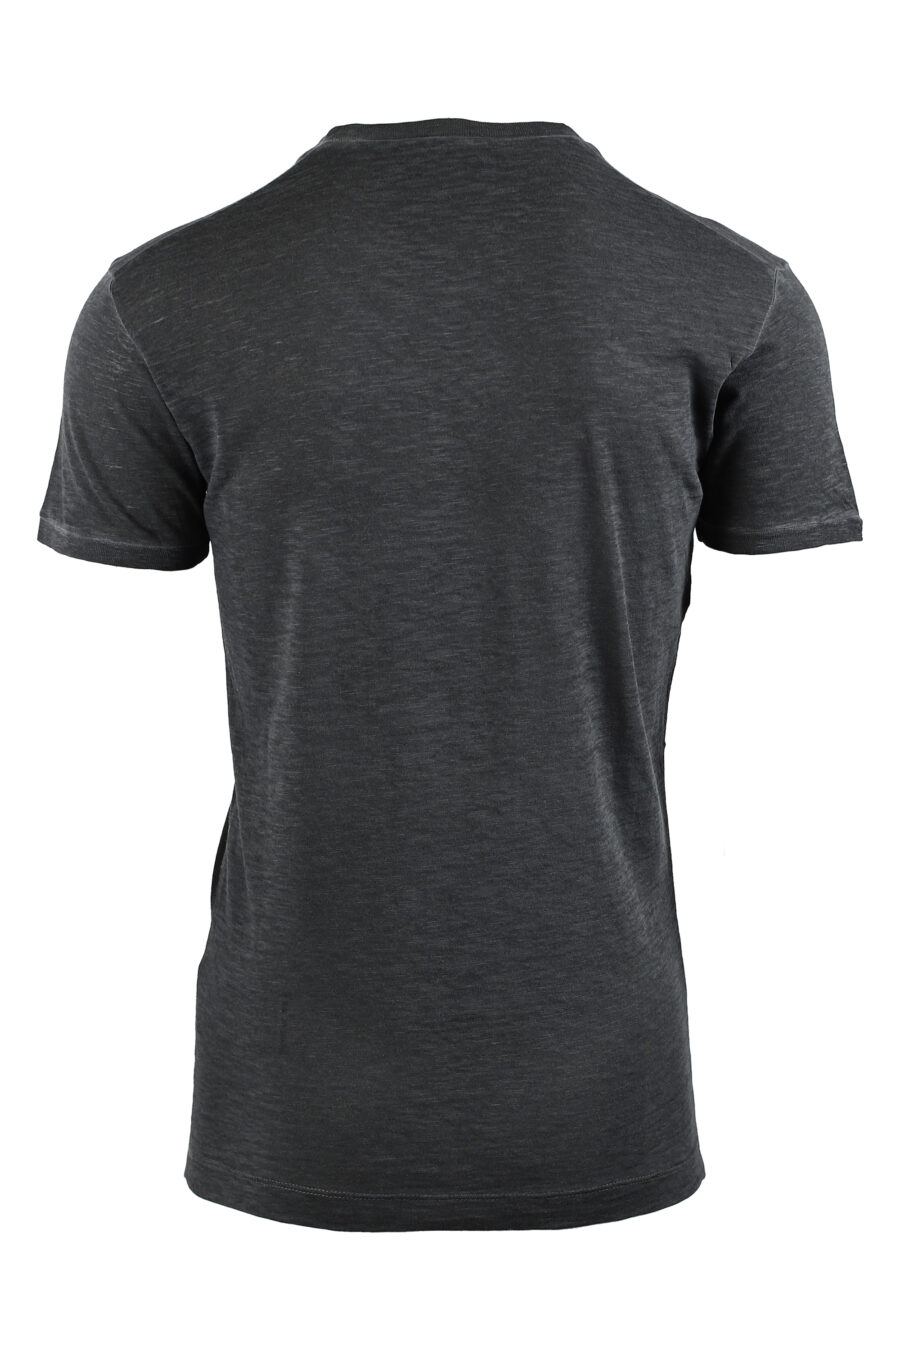 Camiseta gris con maxilogo negro de felpa - IMG 0479